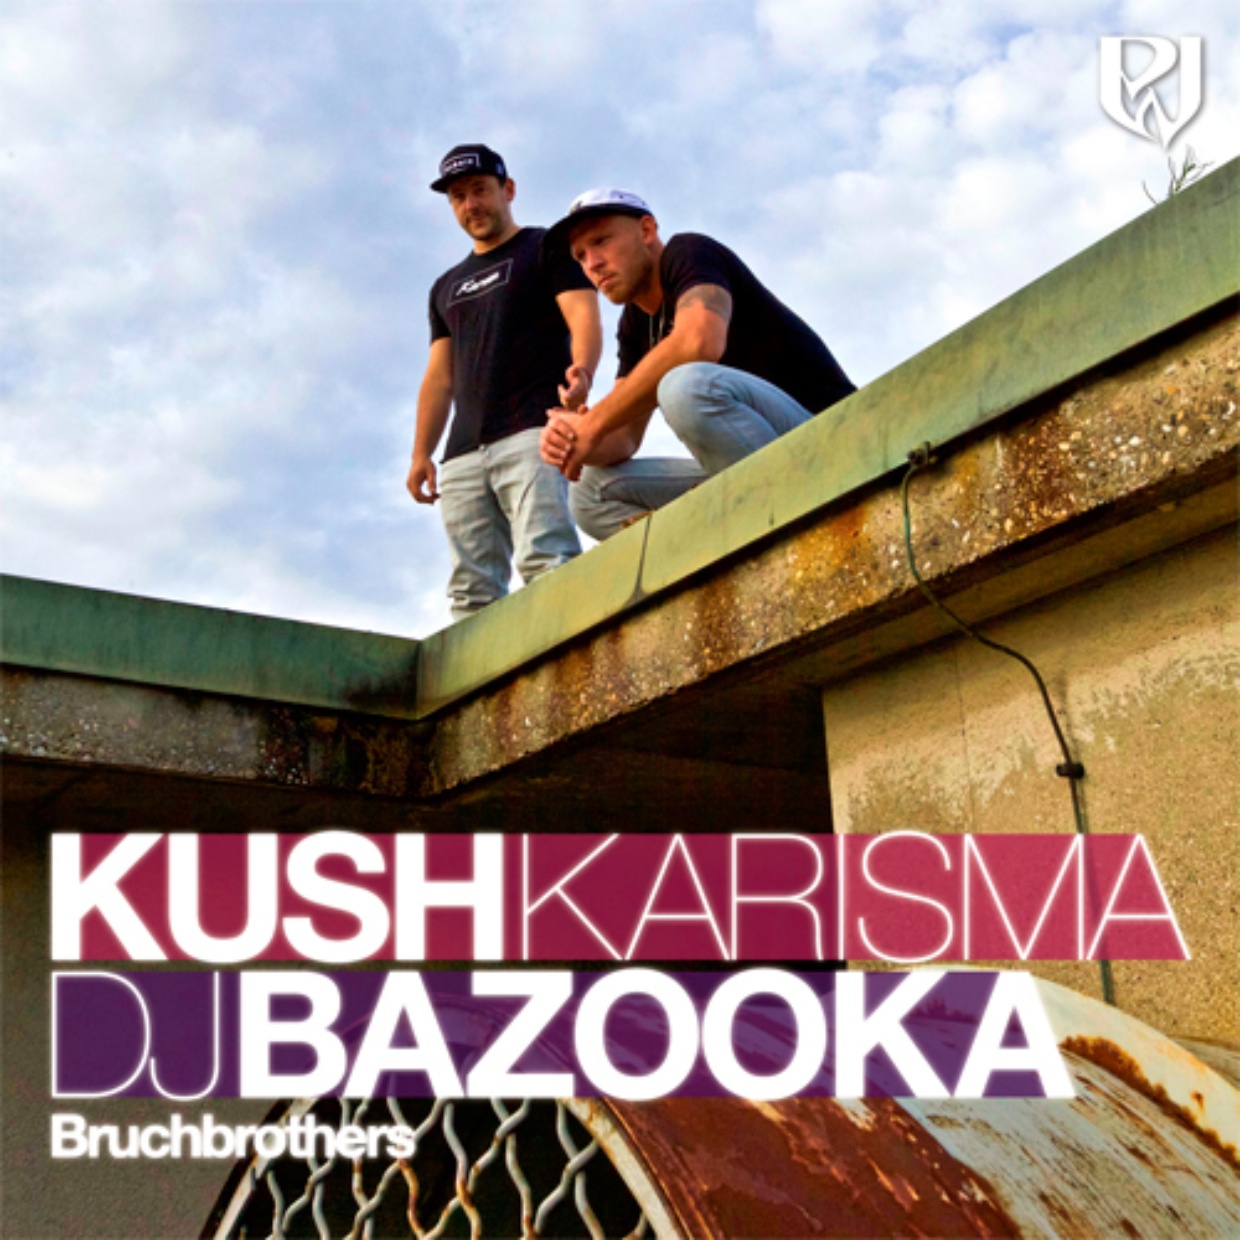 Kush Karisma & DJ Bazooka – Bruchbrothers (Cover)